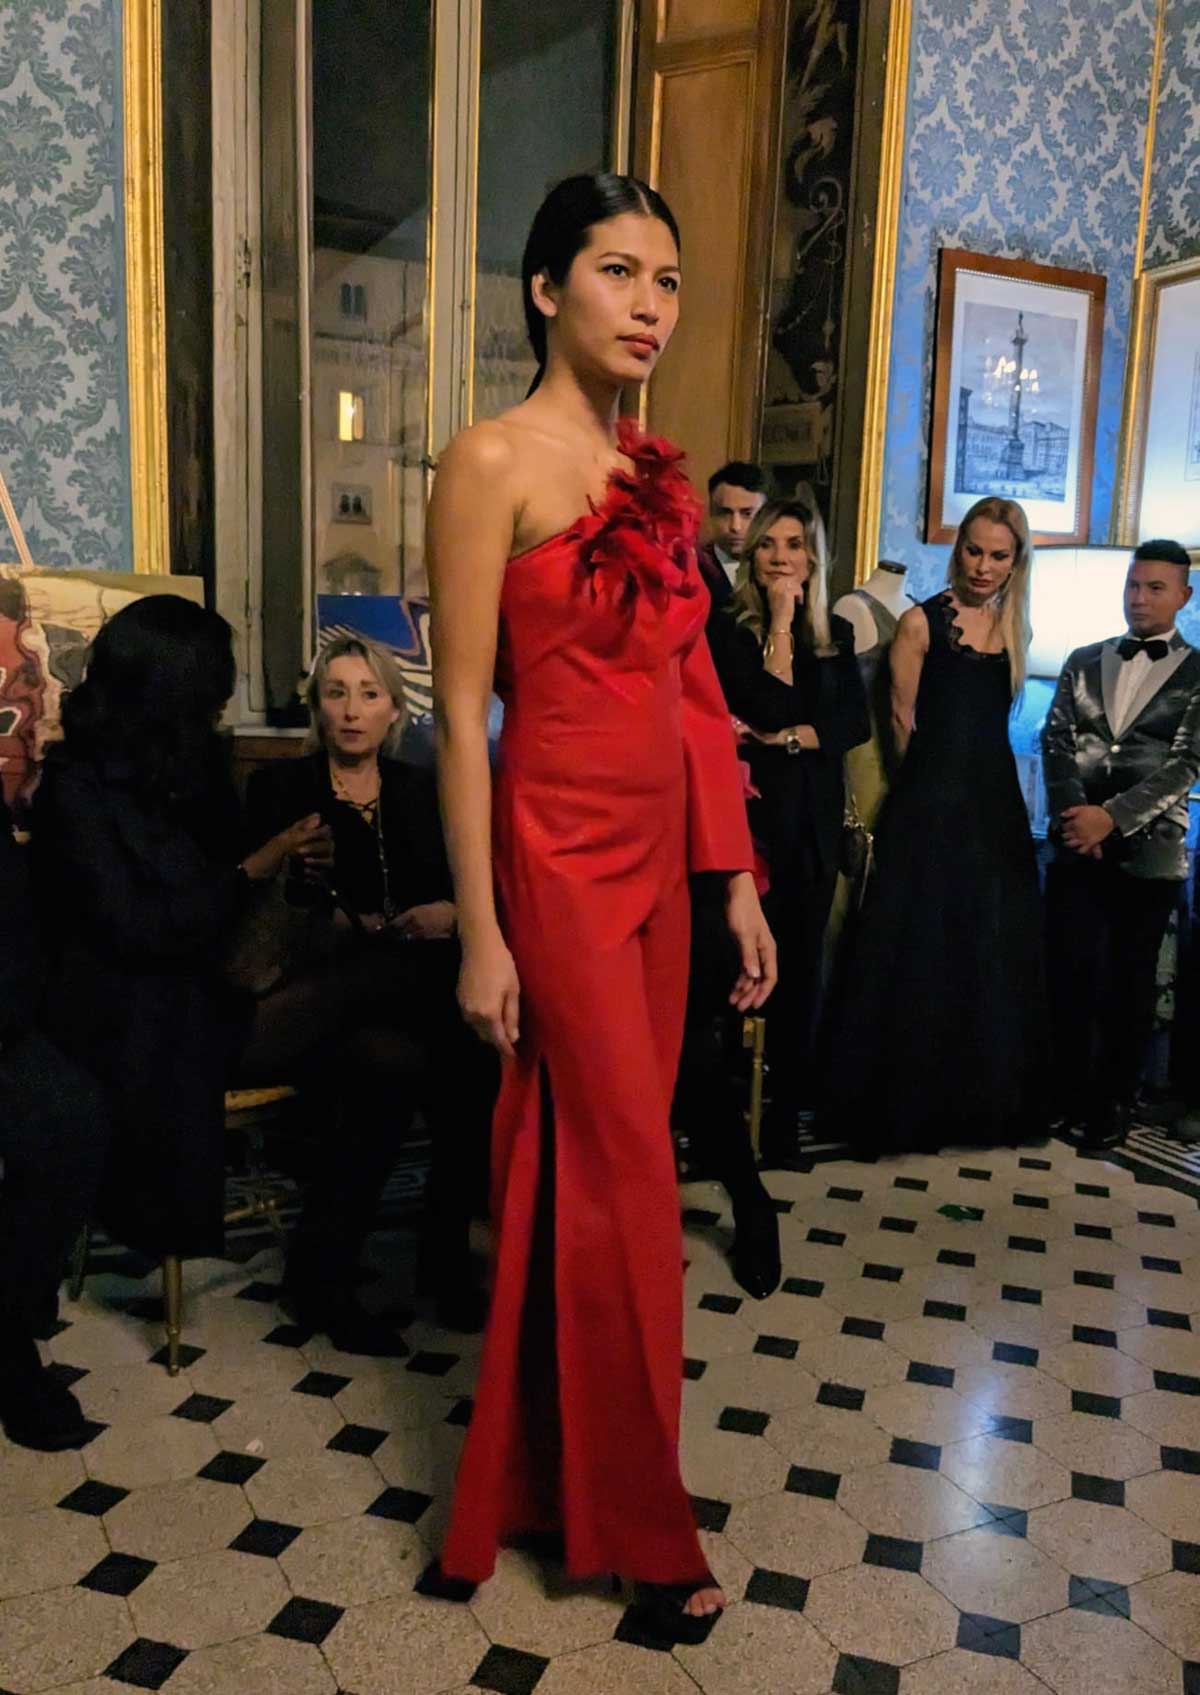 Mod’Art Roma - Il fascino dei colori - sfilata modelle nello storico Palazzo Ferrajoli - evento d’alta moda con gli eleganti abiti di Elins moda vestiti femminili eleganti rossi